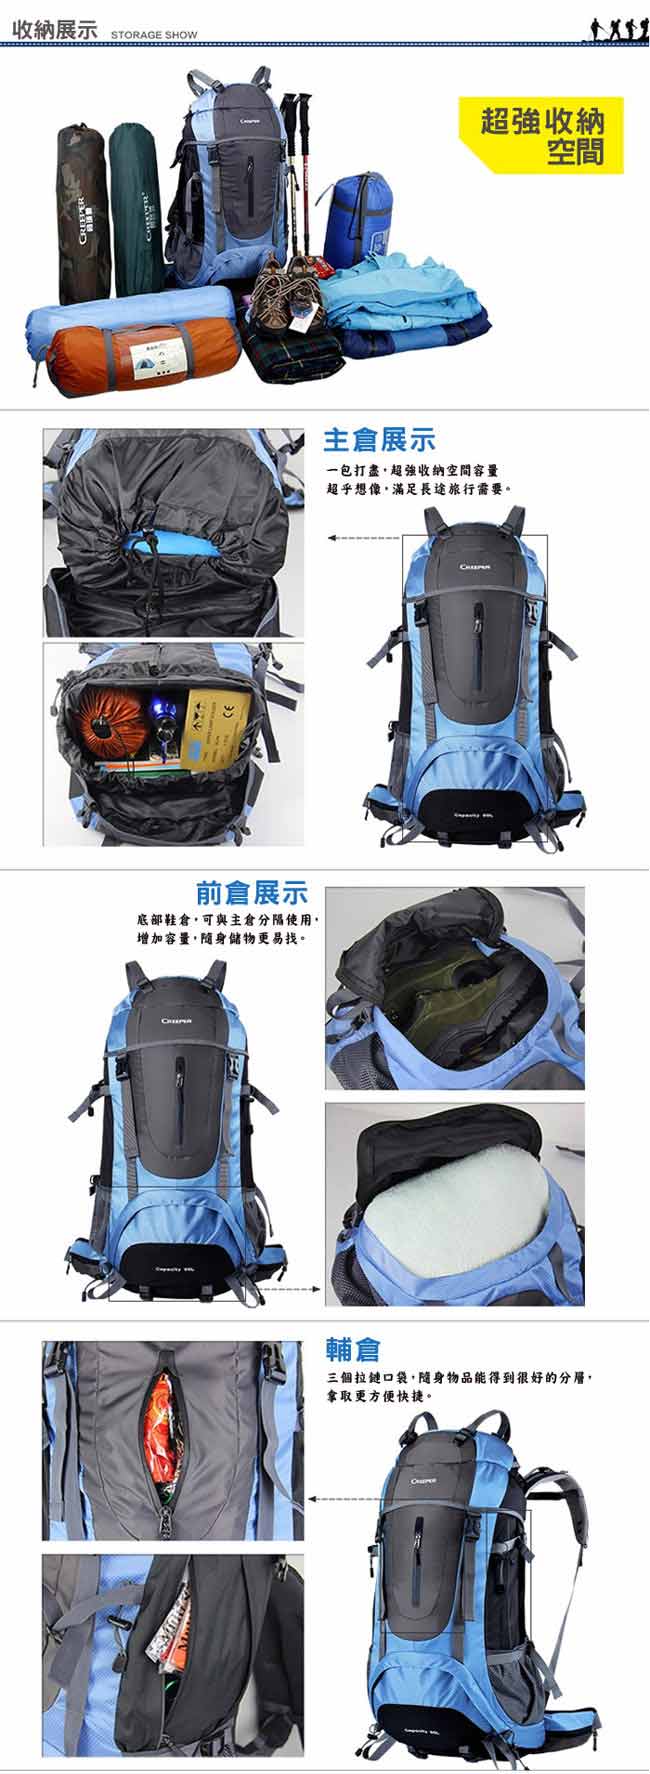 PUSH!登山戶外用品60L專業型登山背包自助旅行背包雙肩背包贈防雨罩